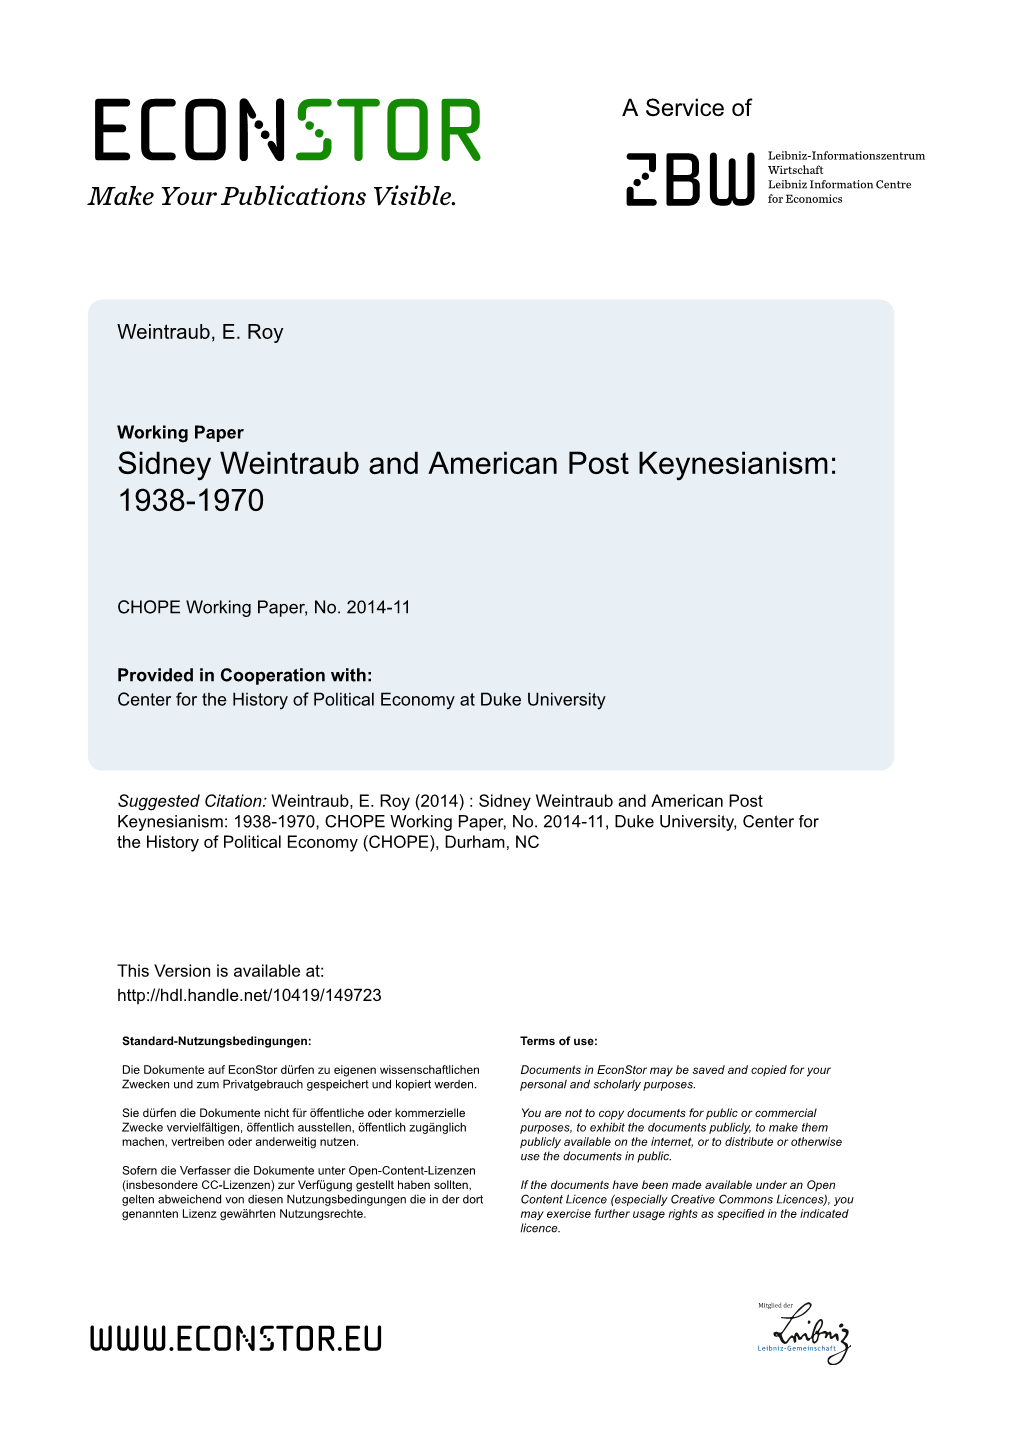 Sidney Weintraub and American Post Keynesianism: 1938-1970